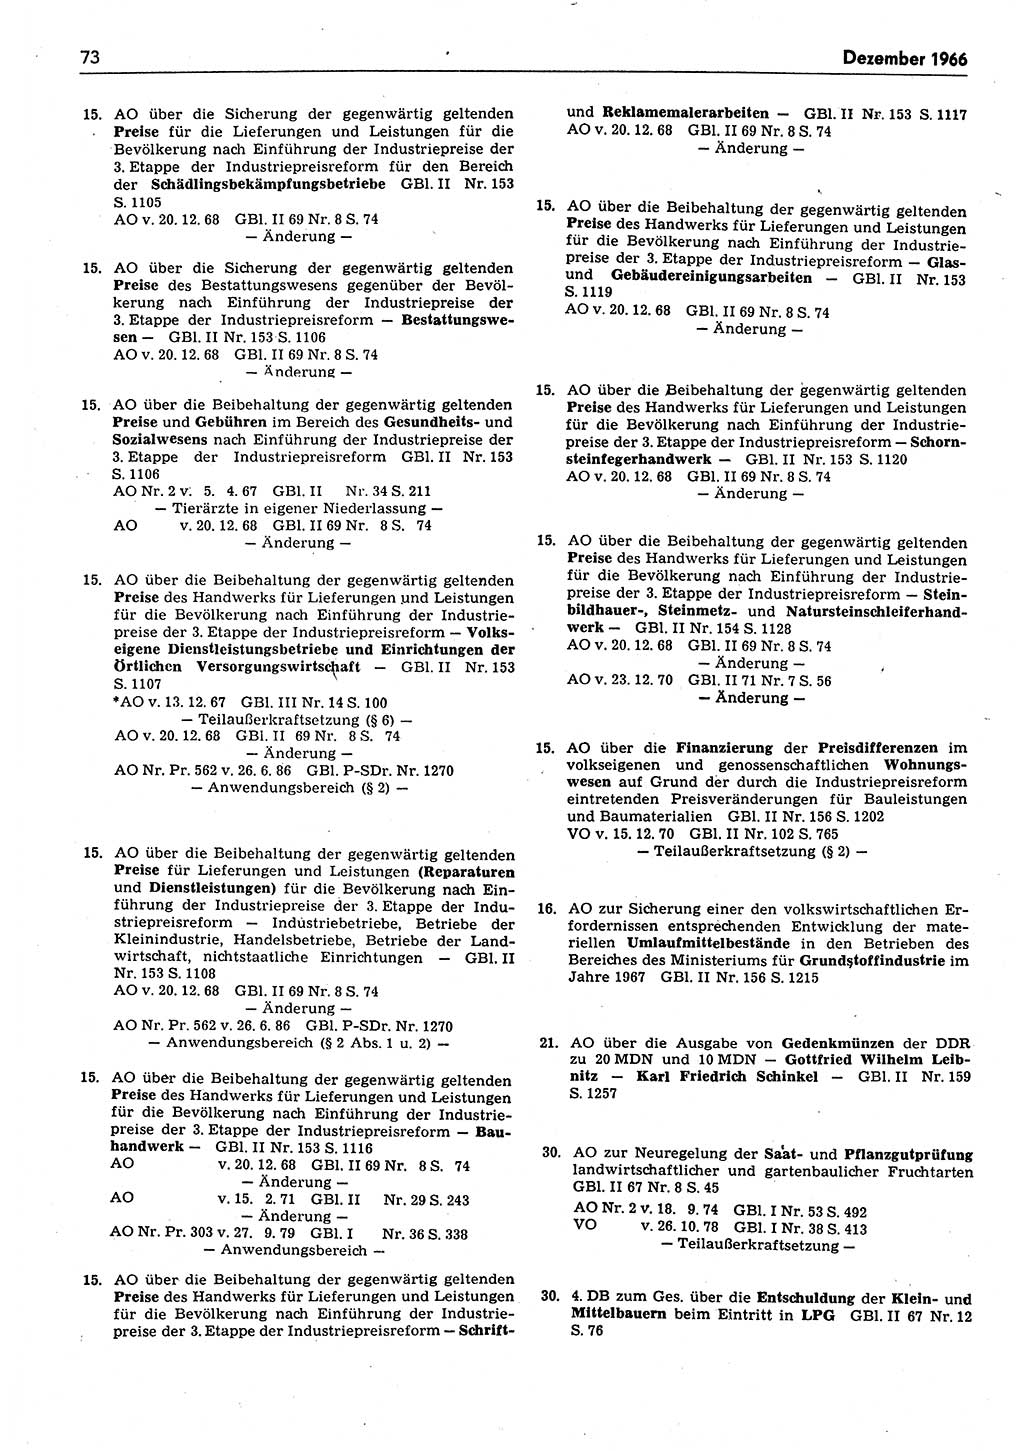 Das geltende Recht der Deutschen Demokratischen Republik (DDR) 1949-1988, Seite 73 (Gelt. R. DDR 1949-1988, S. 73)